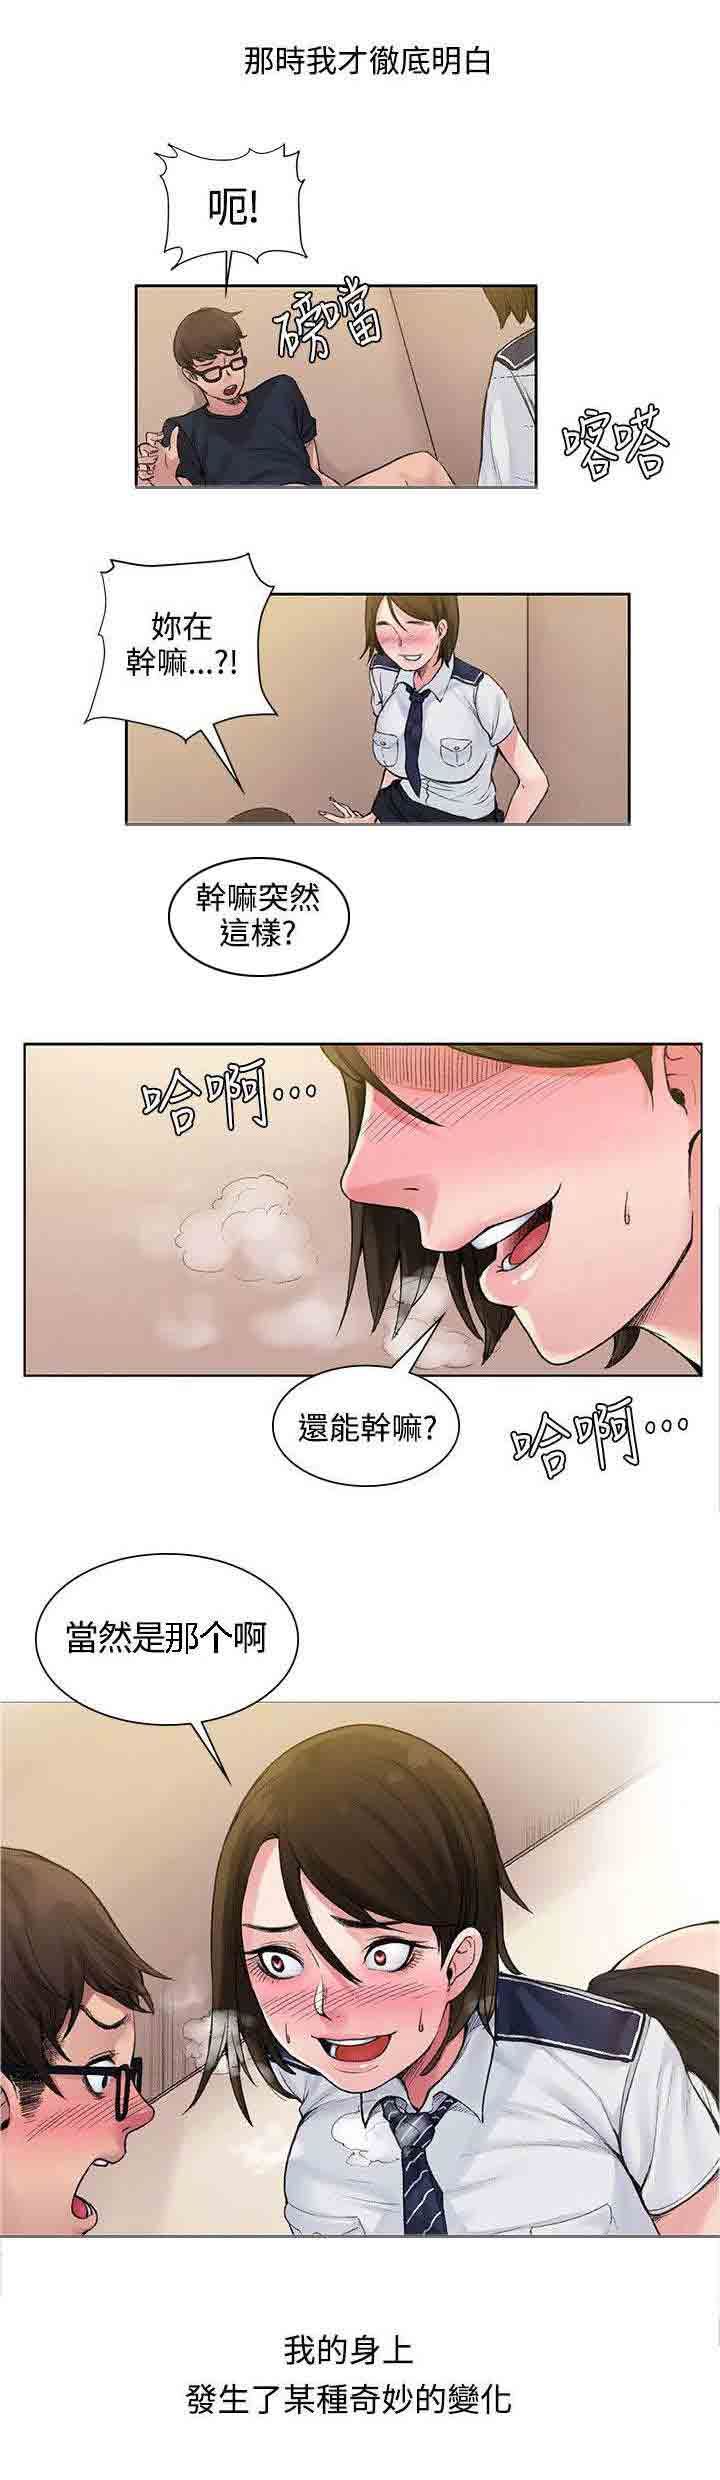 韩国污漫画 甜蜜的香氣 第3话甜蜜香气 8